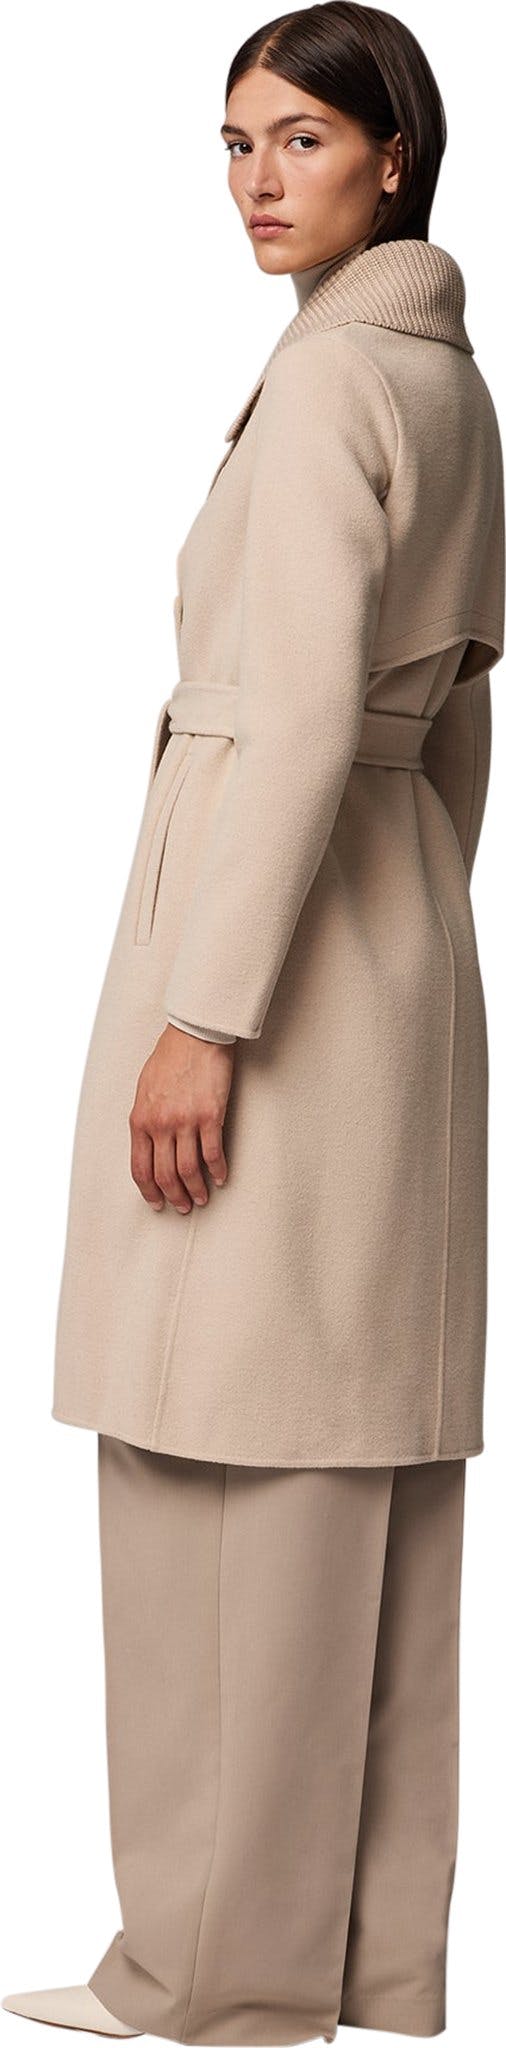 Numéro de l'image de la galerie de produits 4 pour le produit Manteau en laine double face avec col en maille amovible Anna - Femme